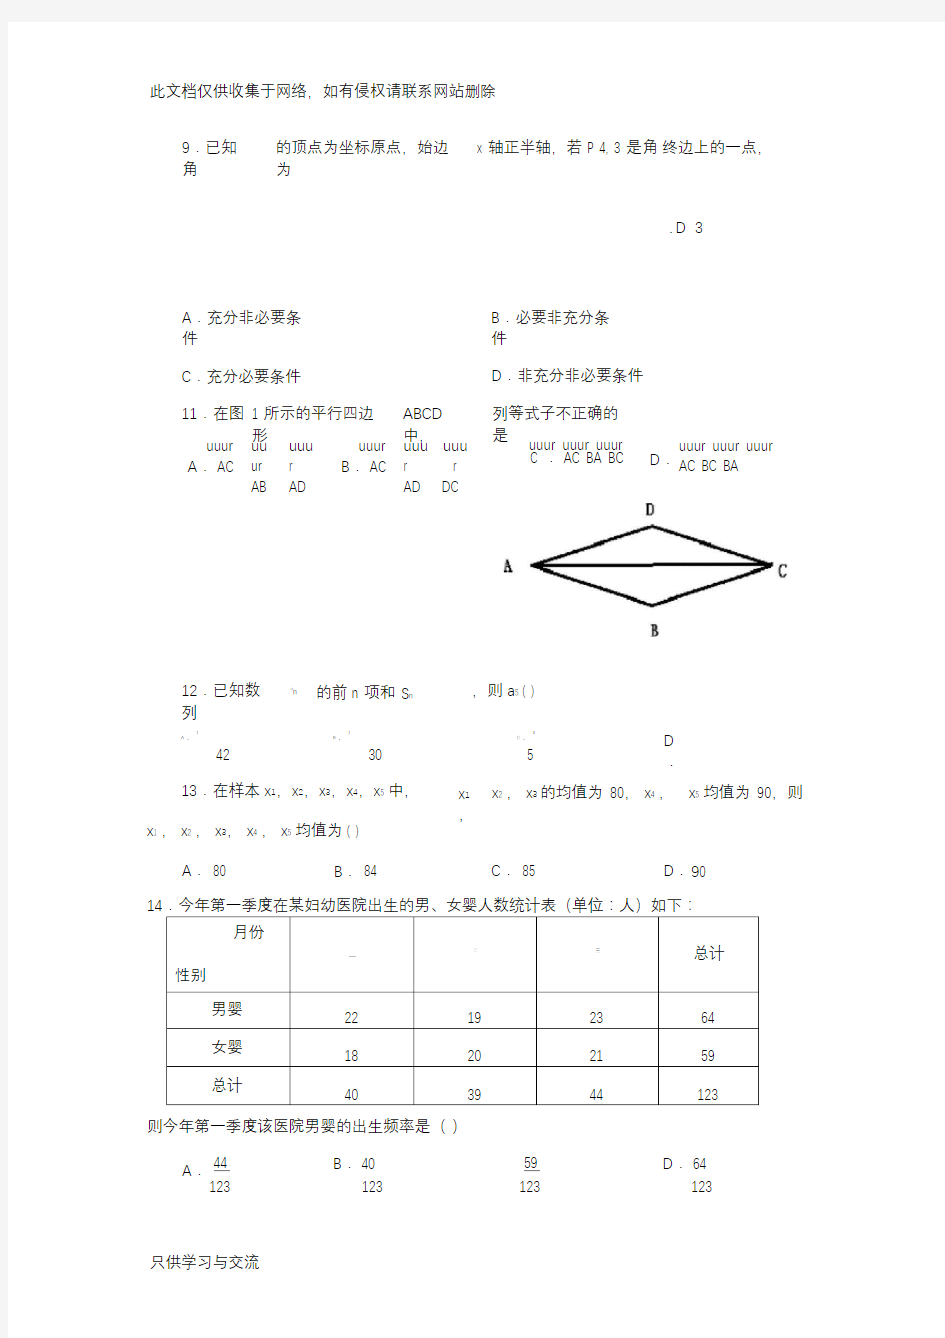 广东省3+证书高职高考数学试卷(真题)及参考答案教学内容